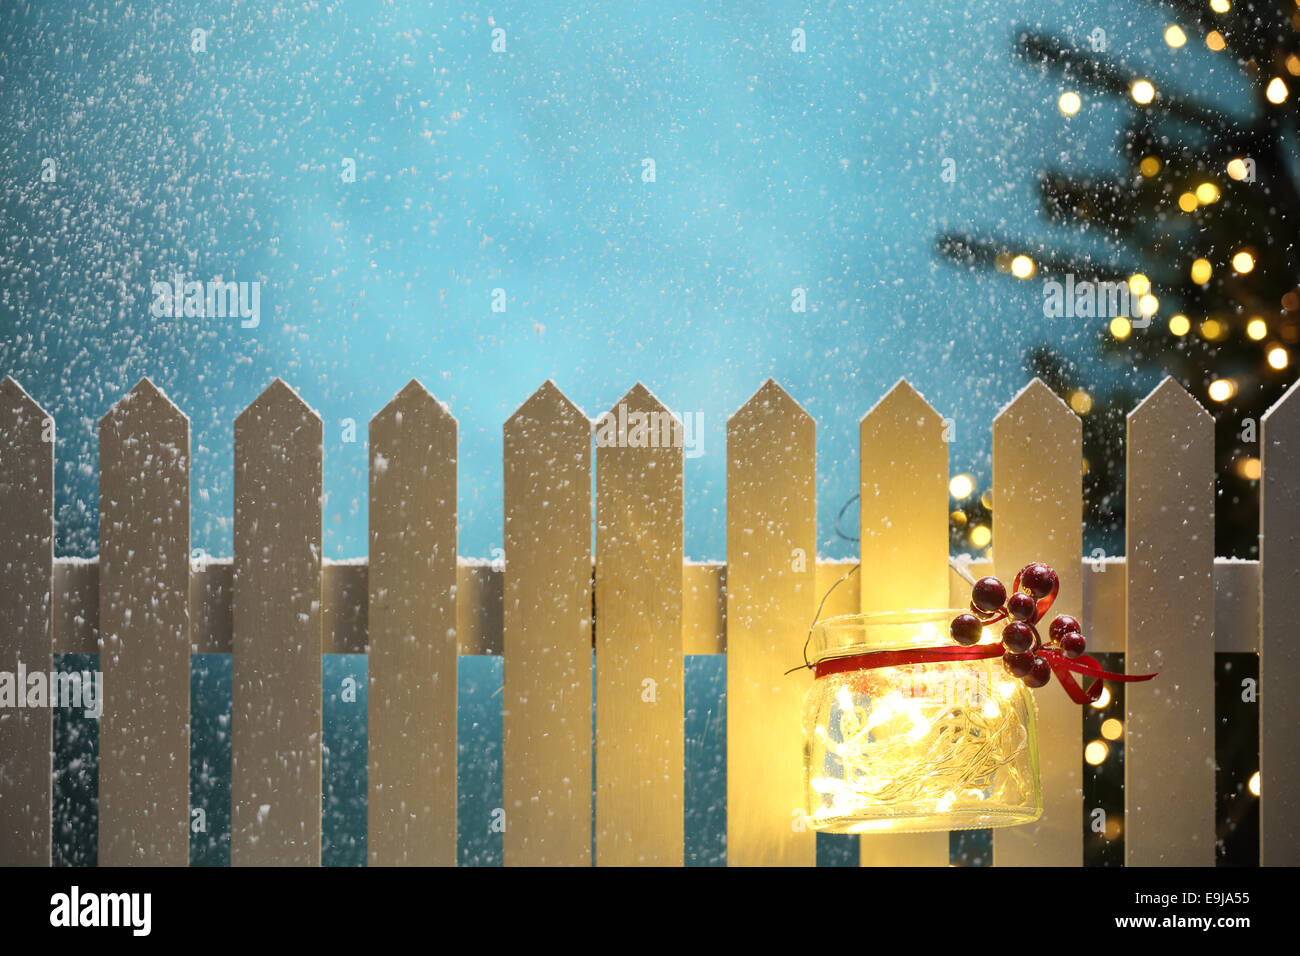 Weihnachtsbeleuchtung in der verschneiten Nacht an Zaun hängen Stockfoto